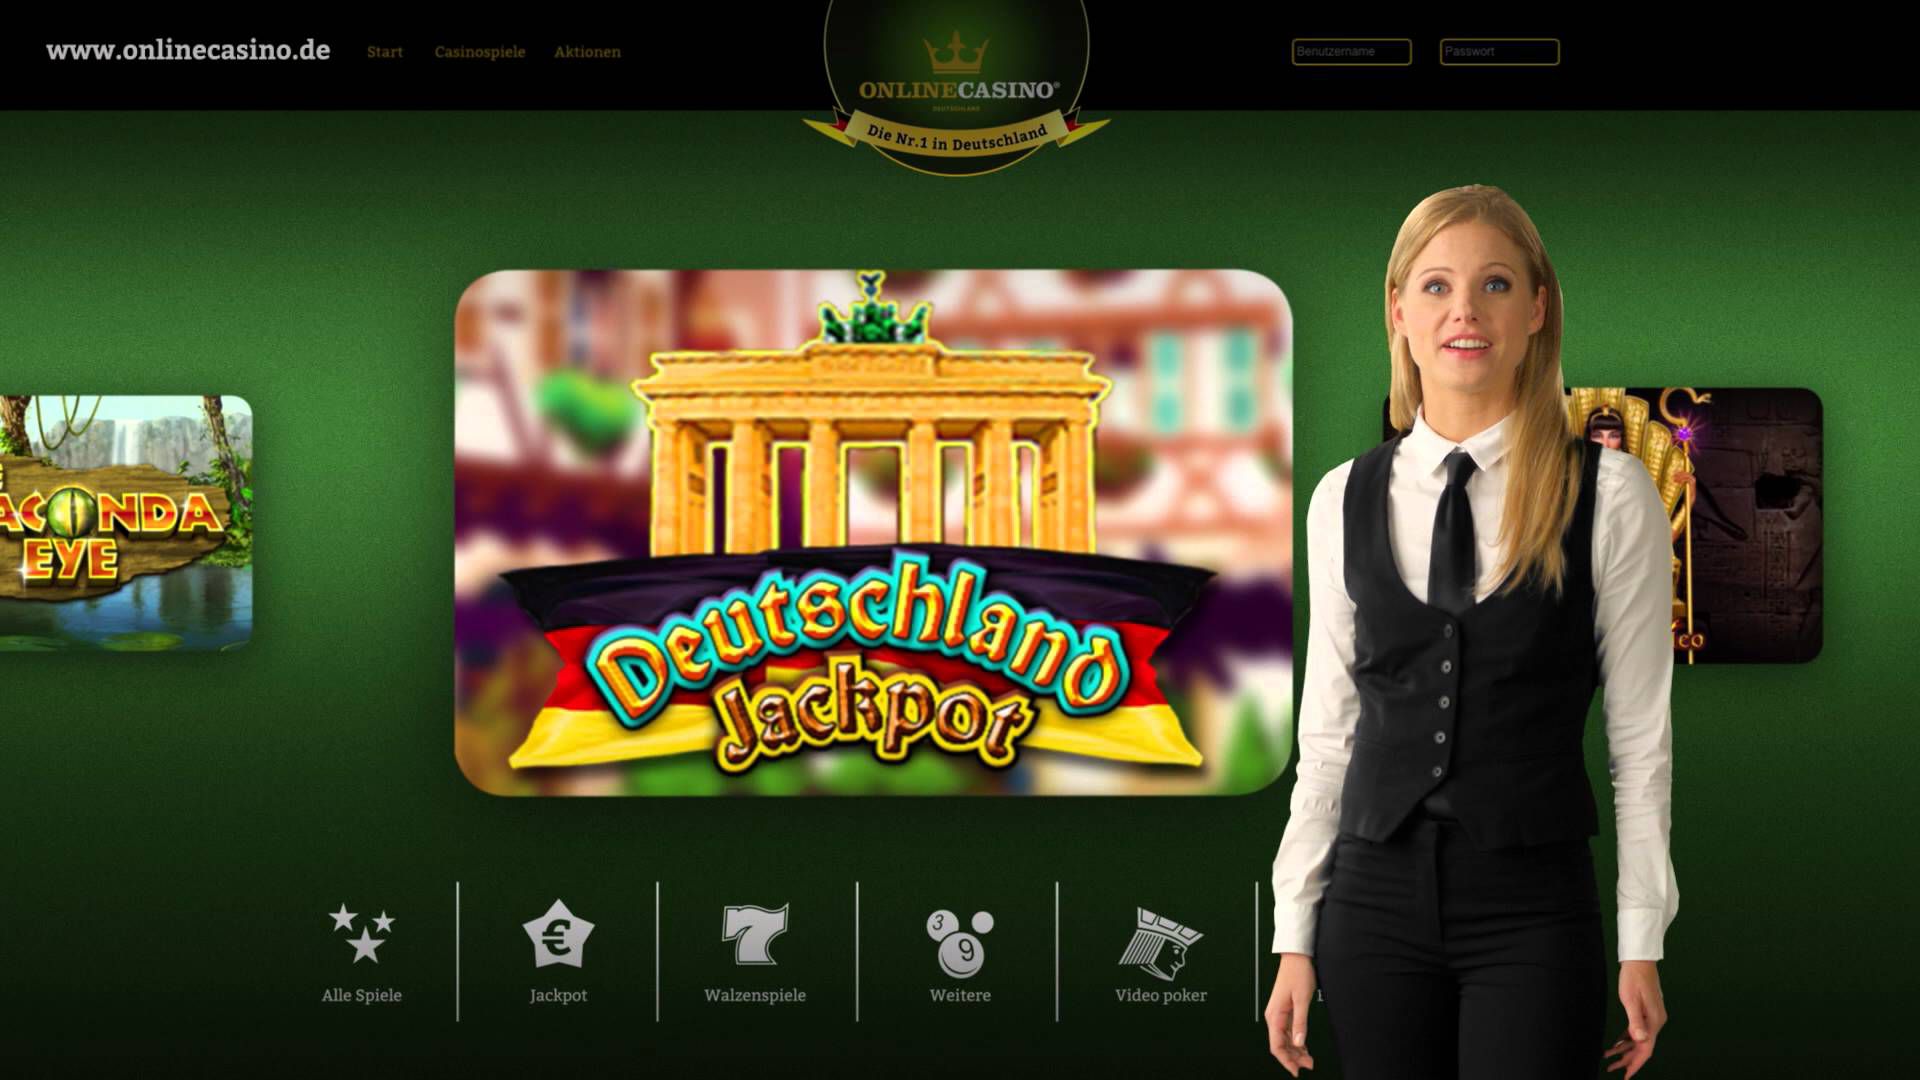 Online Casino Werbung Darsteller